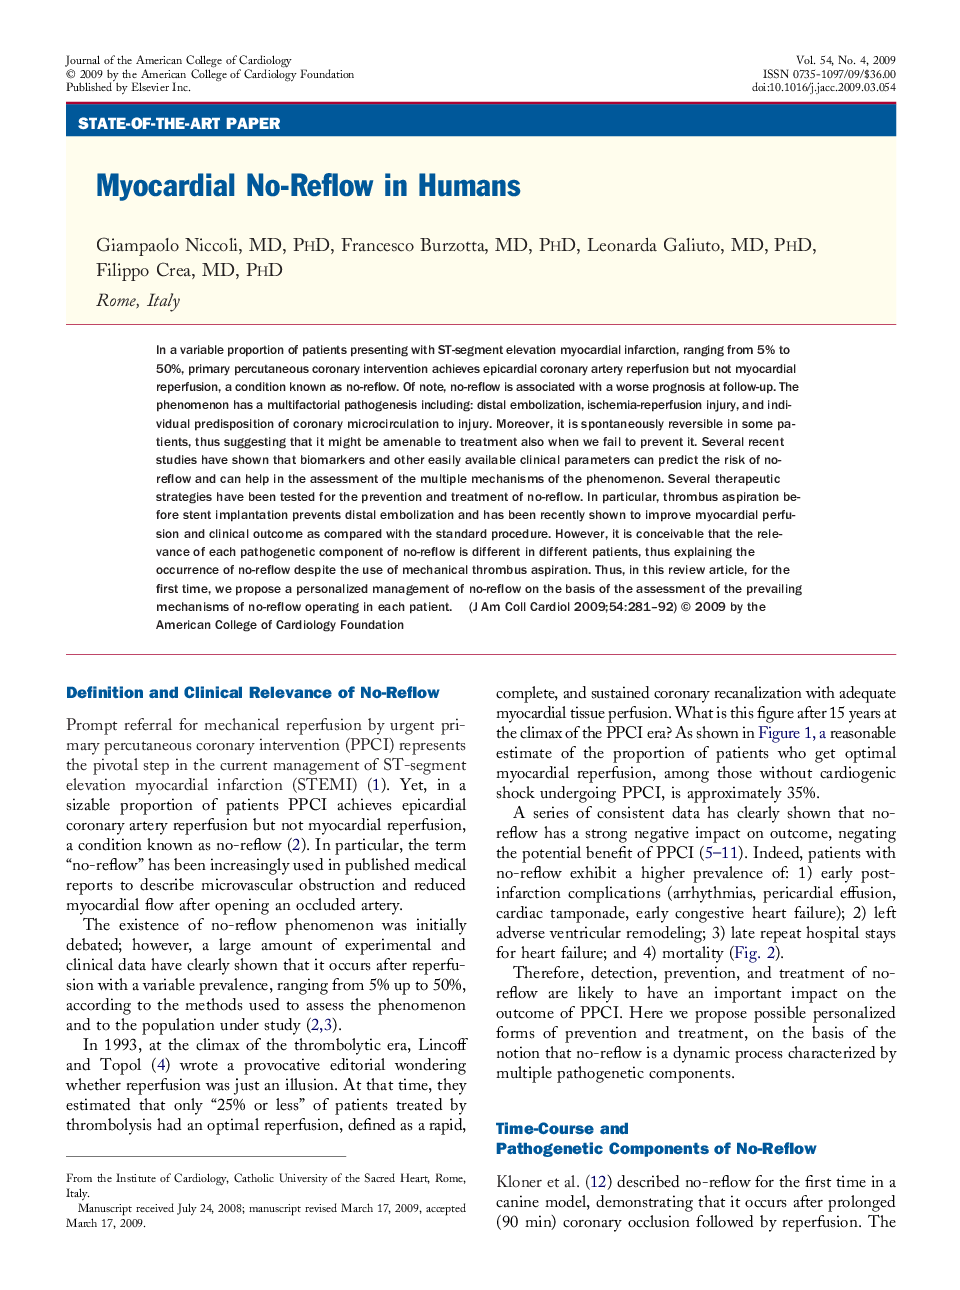 Myocardial No-Reflow in Humans